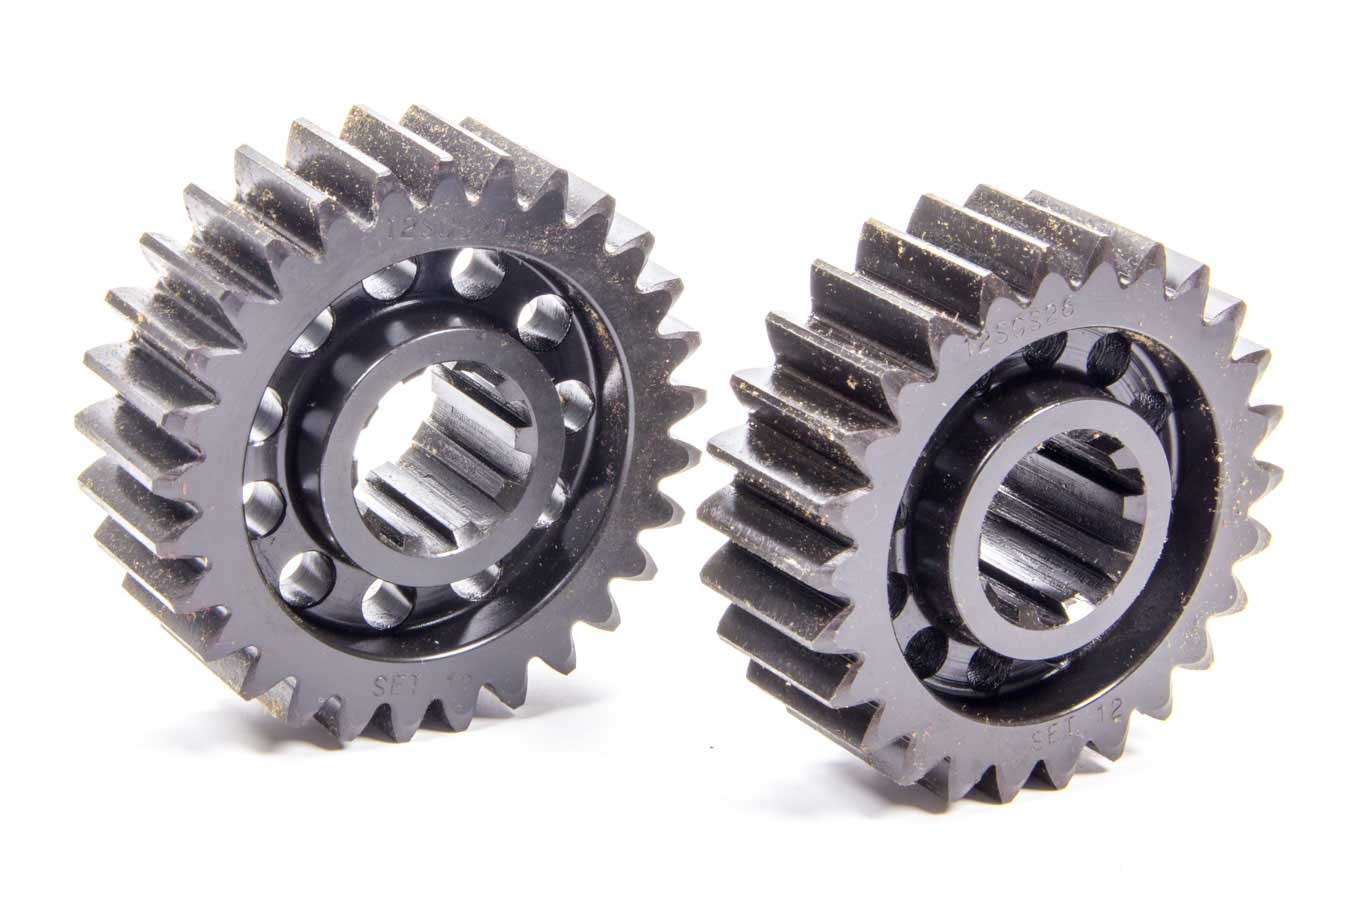 SCS Gears 12 Quick Change Gear Set, Professional, Set 12, 10 Spline, 4.11 Ratio 4.58 / 3.68, 4.86 Ratio 5.42 / 4.36, Steel, Each